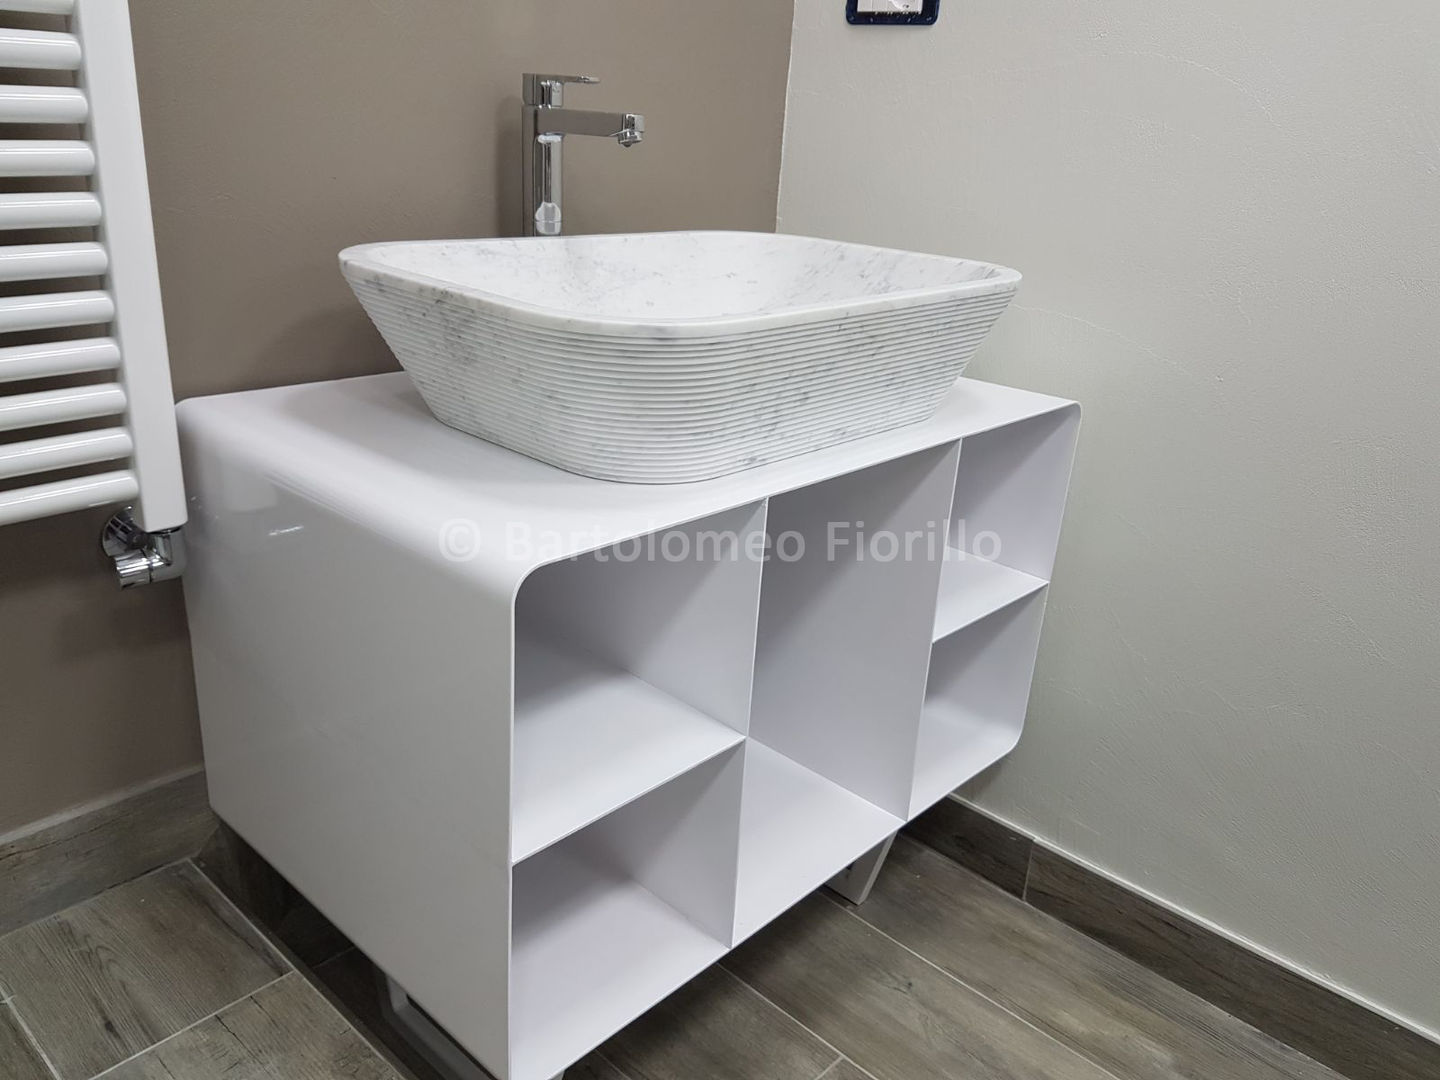 Bathroom Design, Bartolomeo Fiorillo Bartolomeo Fiorillo 모던스타일 욕실